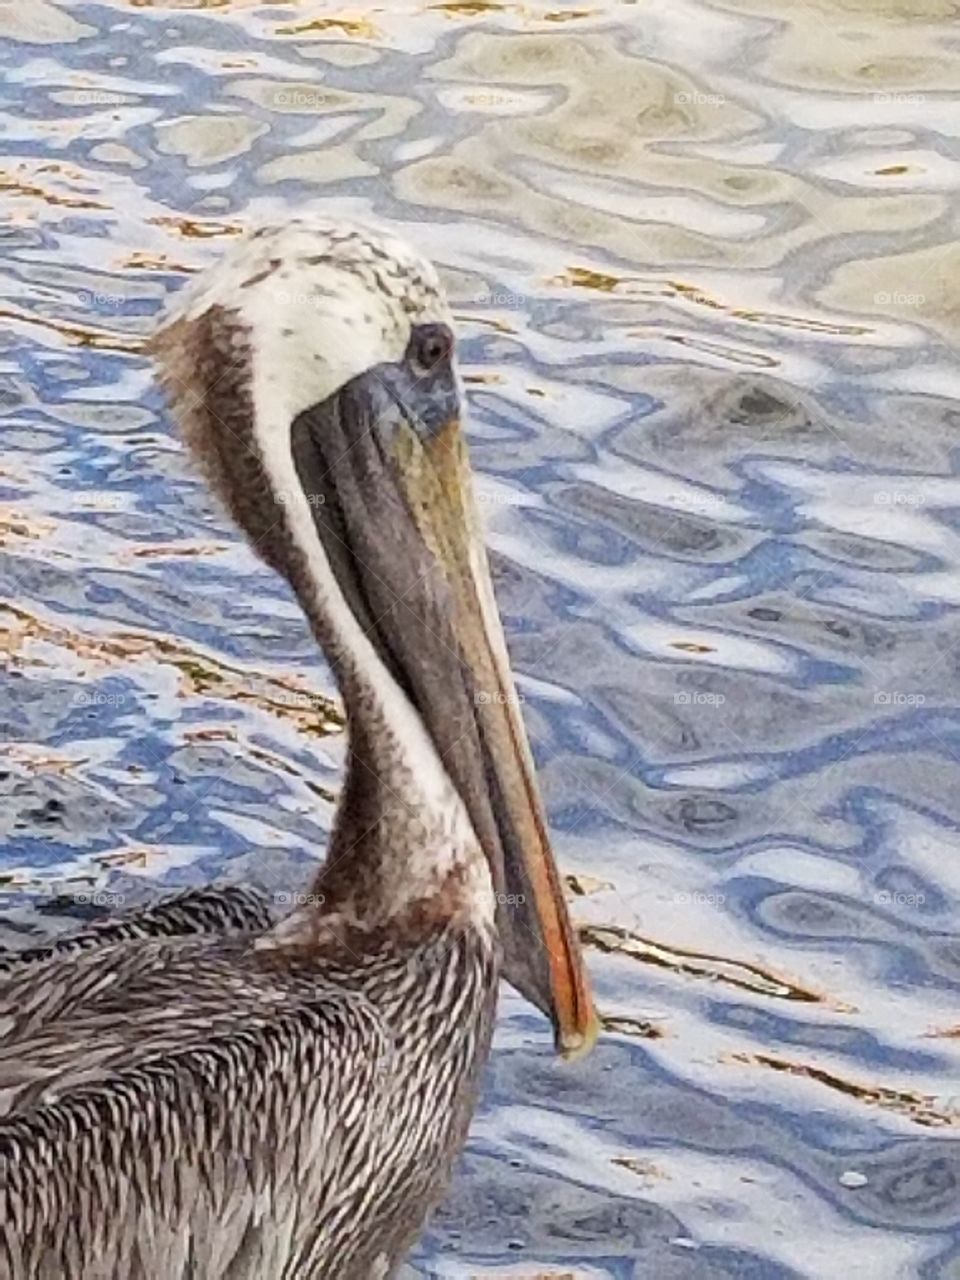 Pelican, St. Petersburg, Florida